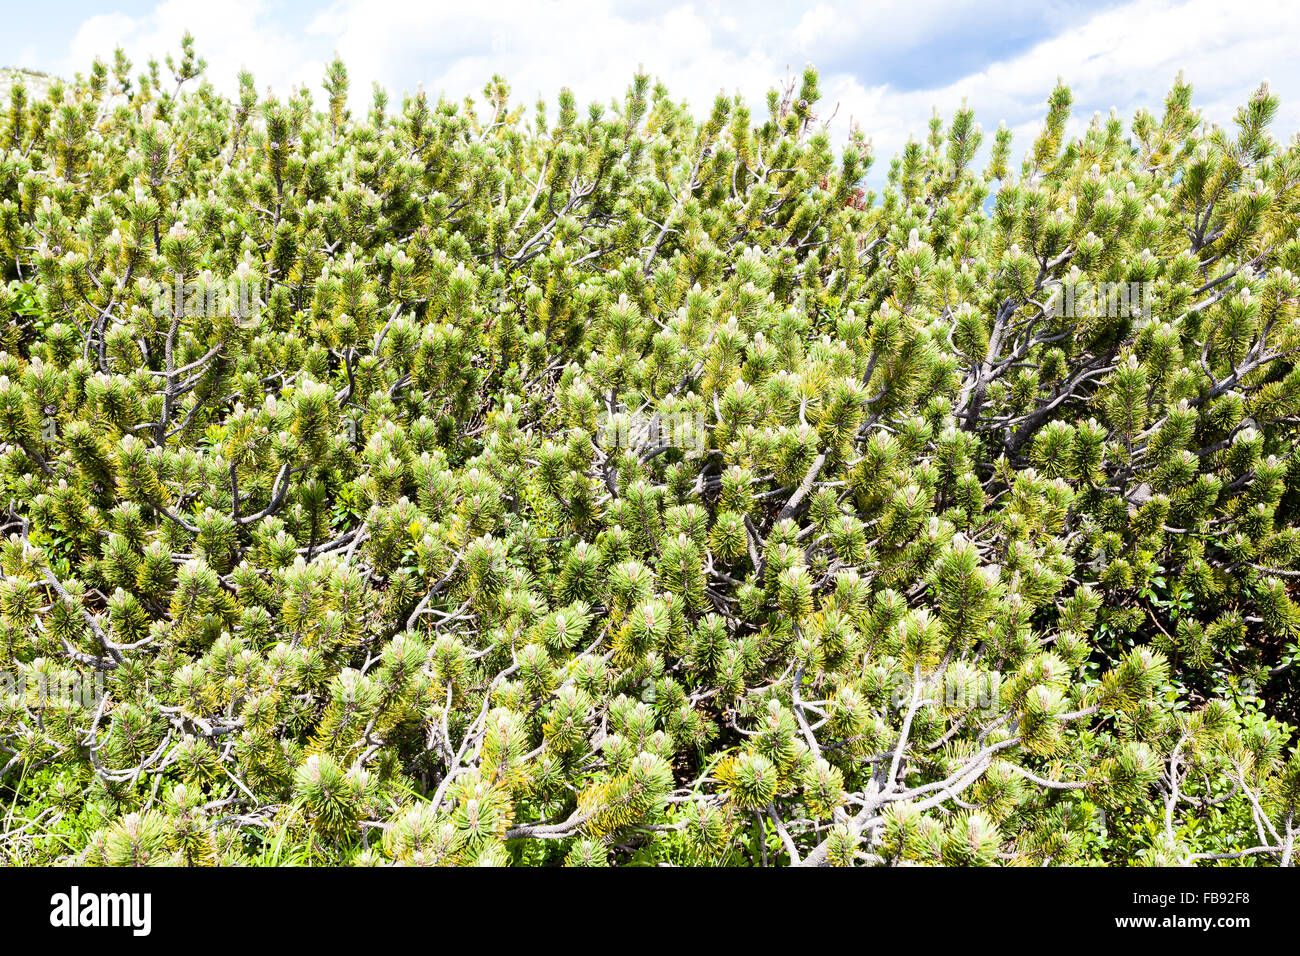 Nature background, close up of mugo pines needles Stock Photo